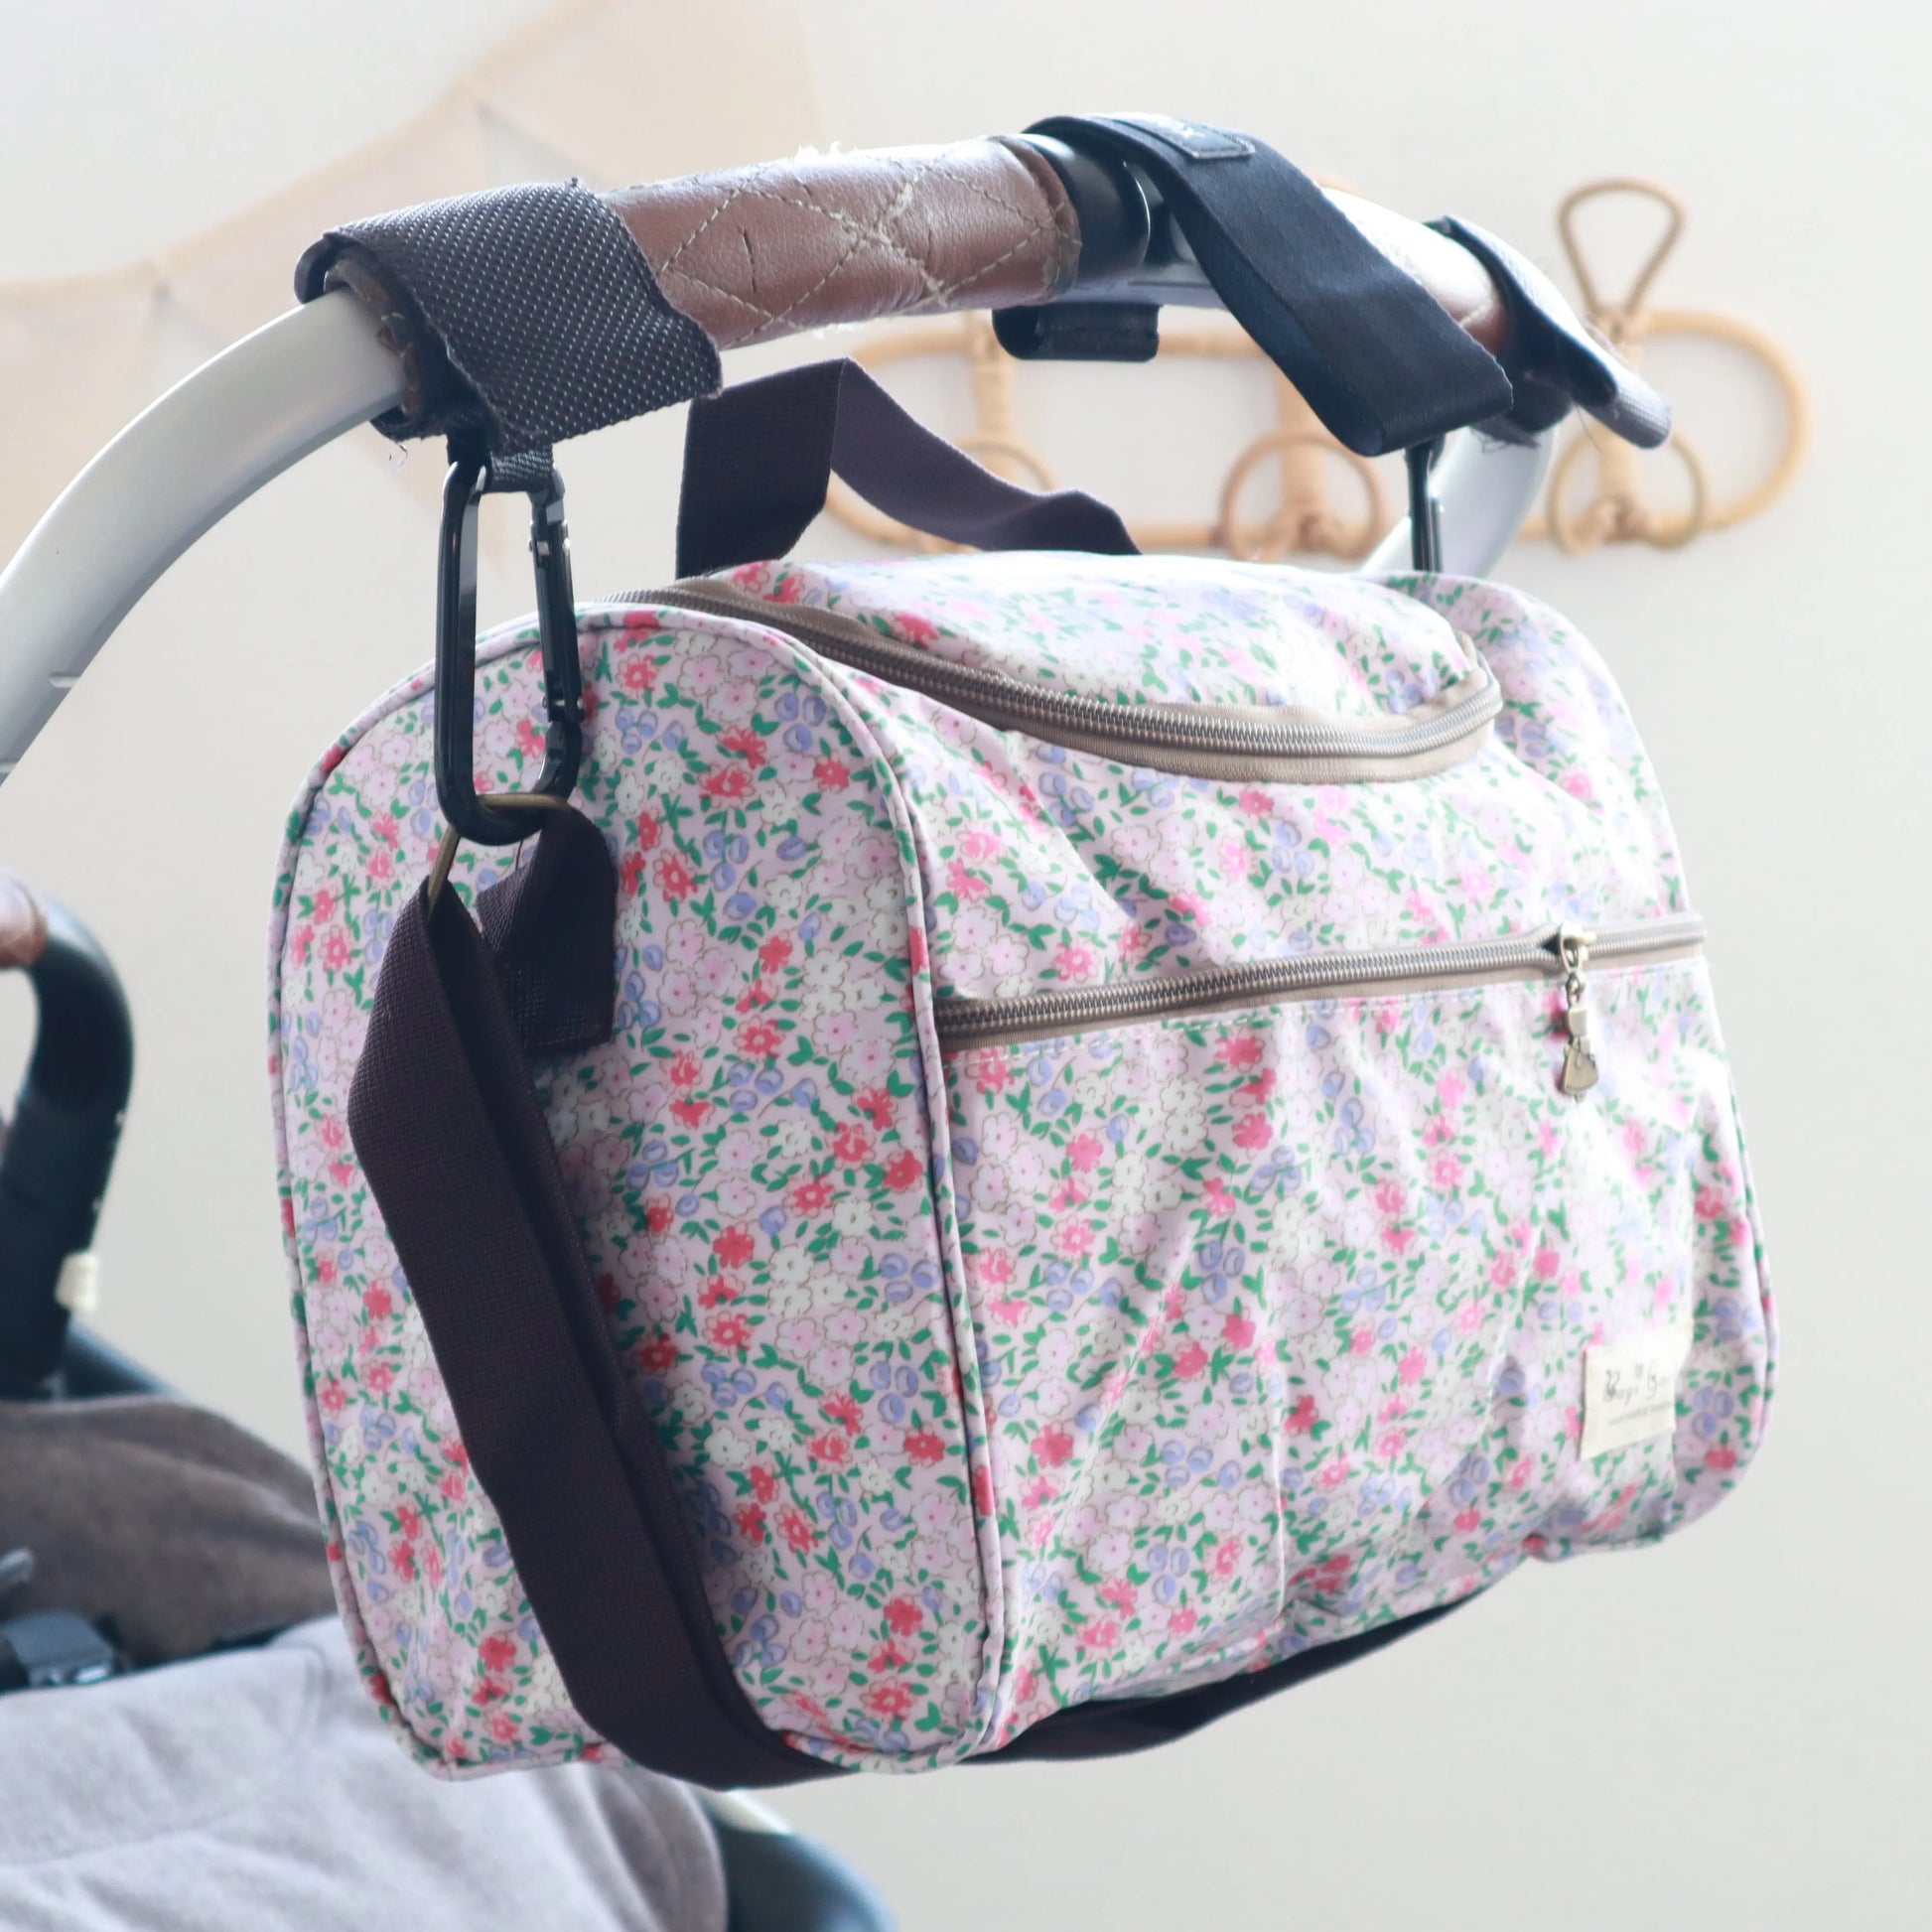 Bags Garden bolso de carrito Bolso para carrito de bebe mini Bags Garden Colorete Bags Garden